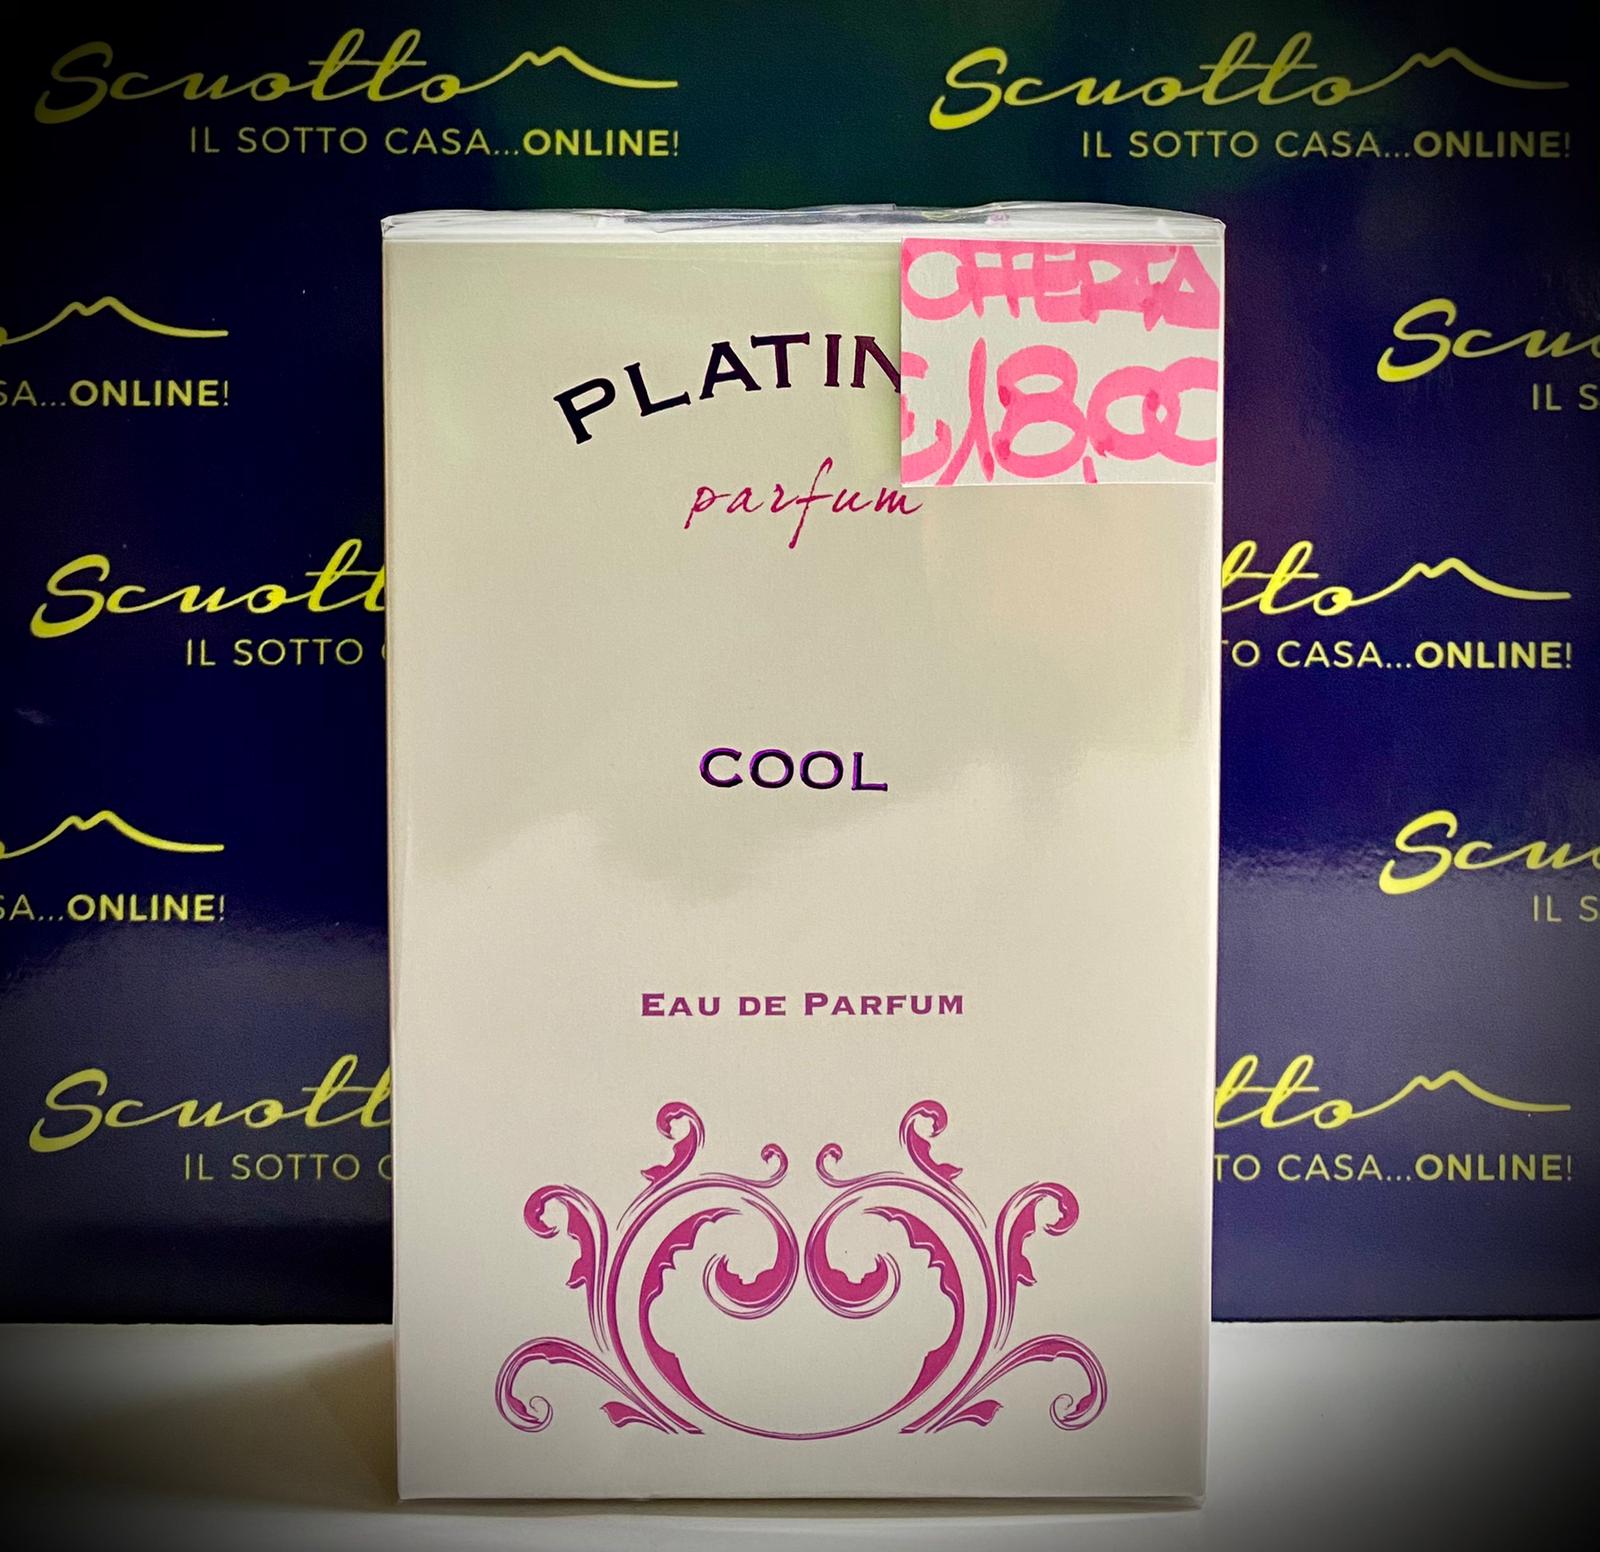 1600px x 1552px - Cool 100 ml. - Eau de parfum - Platinum